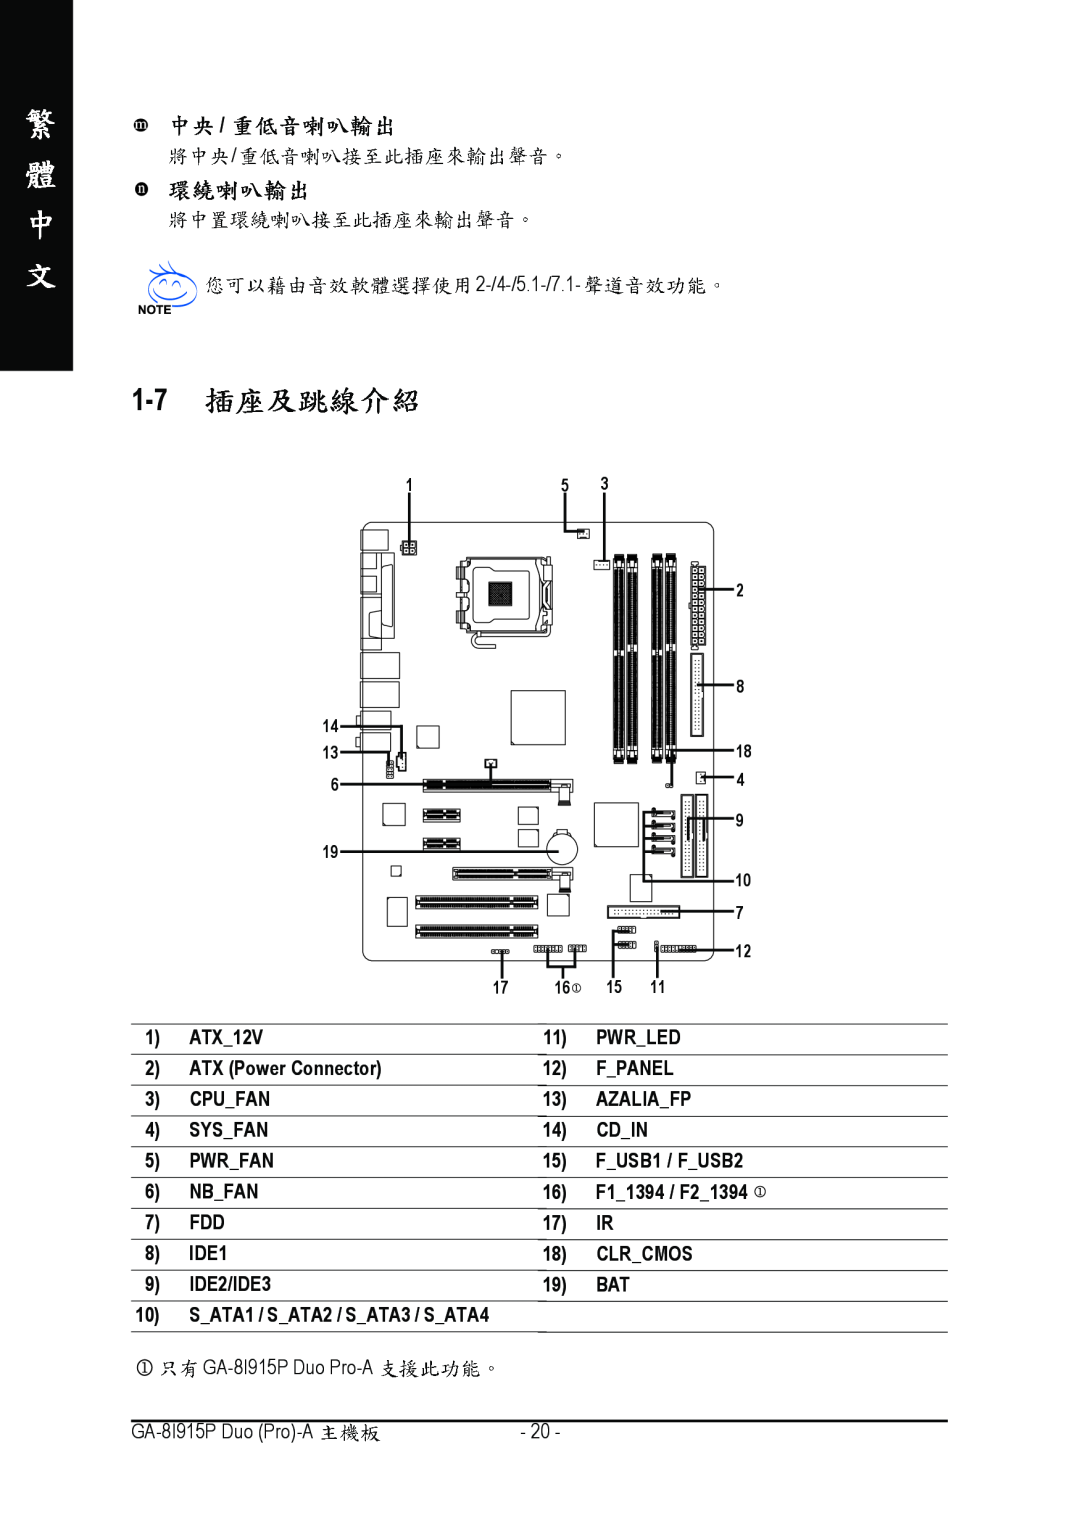 Gigabyte GA-8I915P manual 2-/4-/5.1-/7.1, SATA1 / SATA2 / SATA3 / SATA4 